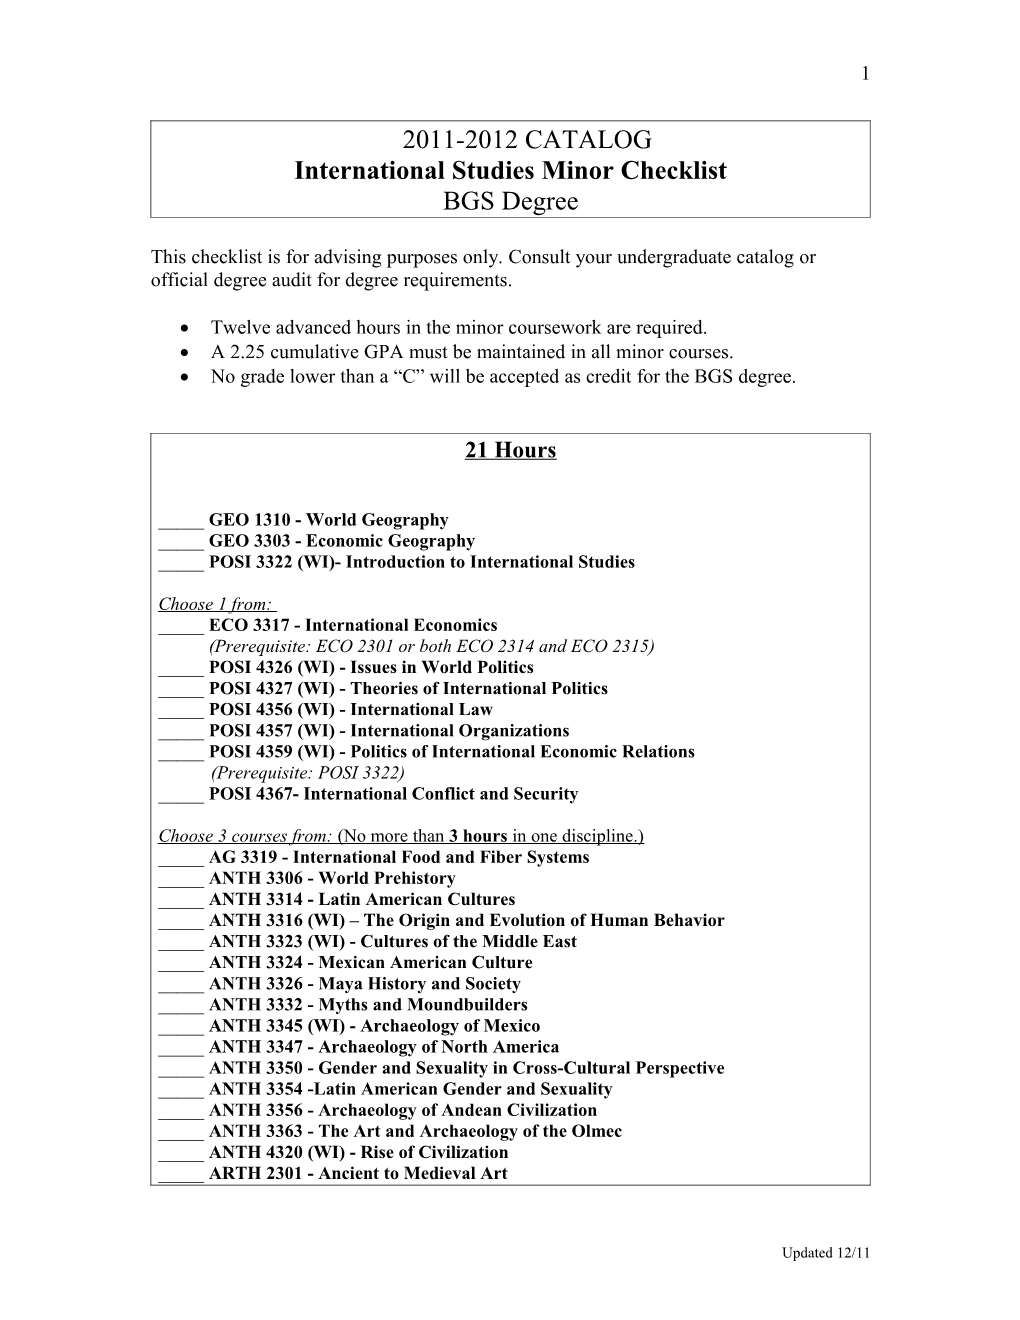 International Studies Minor Checklist